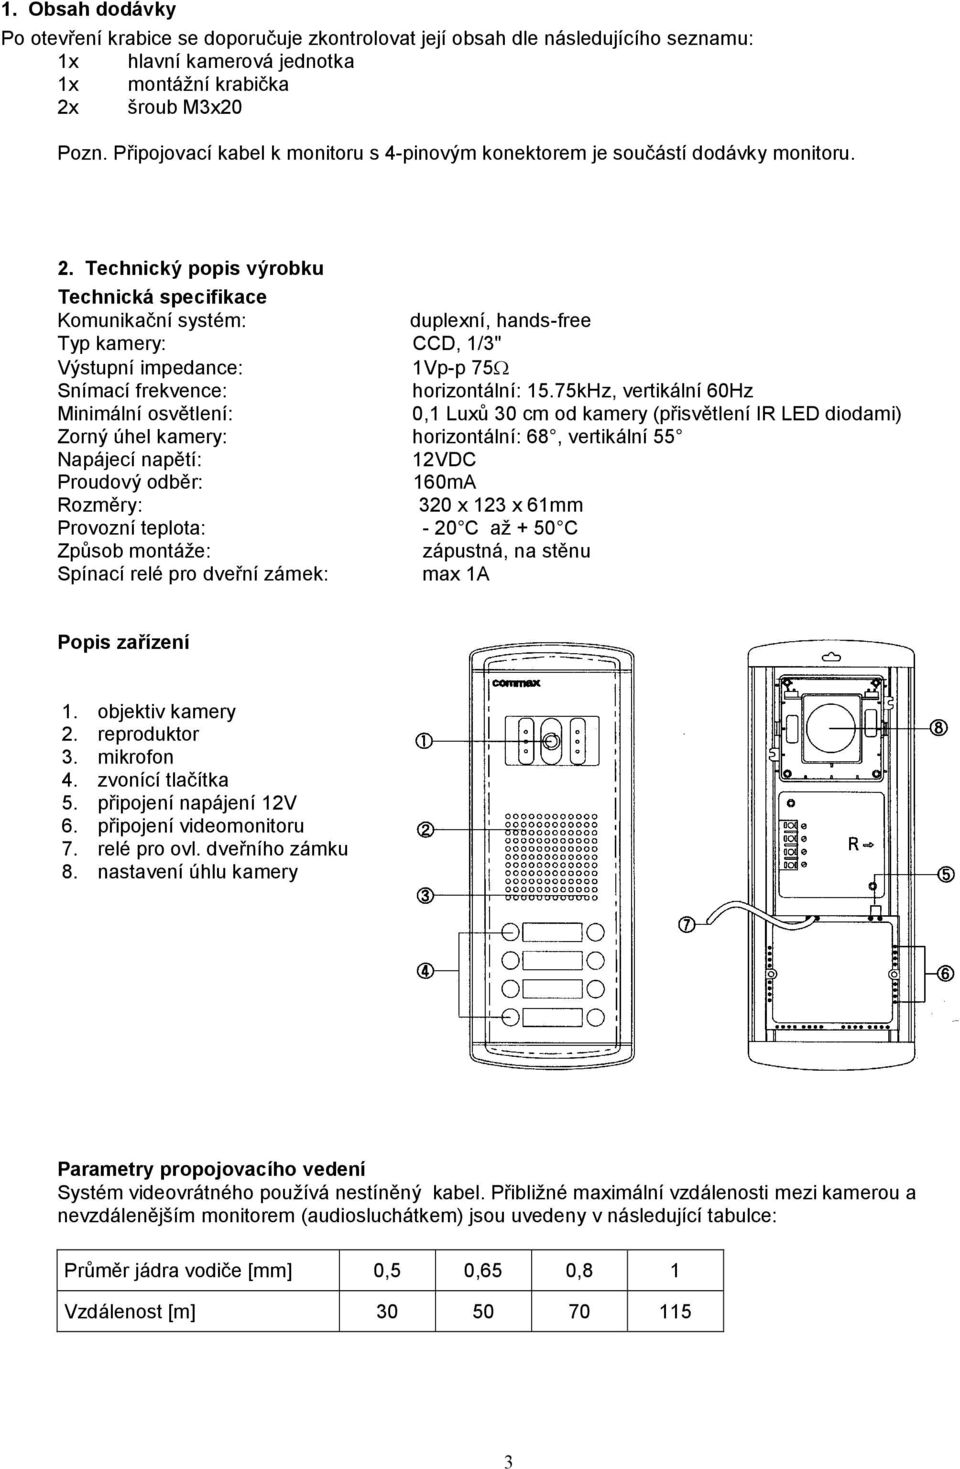 Technický popis výrobku Technická specifikace Komunikační systém: duplexní, hands-free Typ kamery: CCD, 1/3" Výstupní impedance: 1Vp-p 75 Snímací frekvence: horizontální: 15.